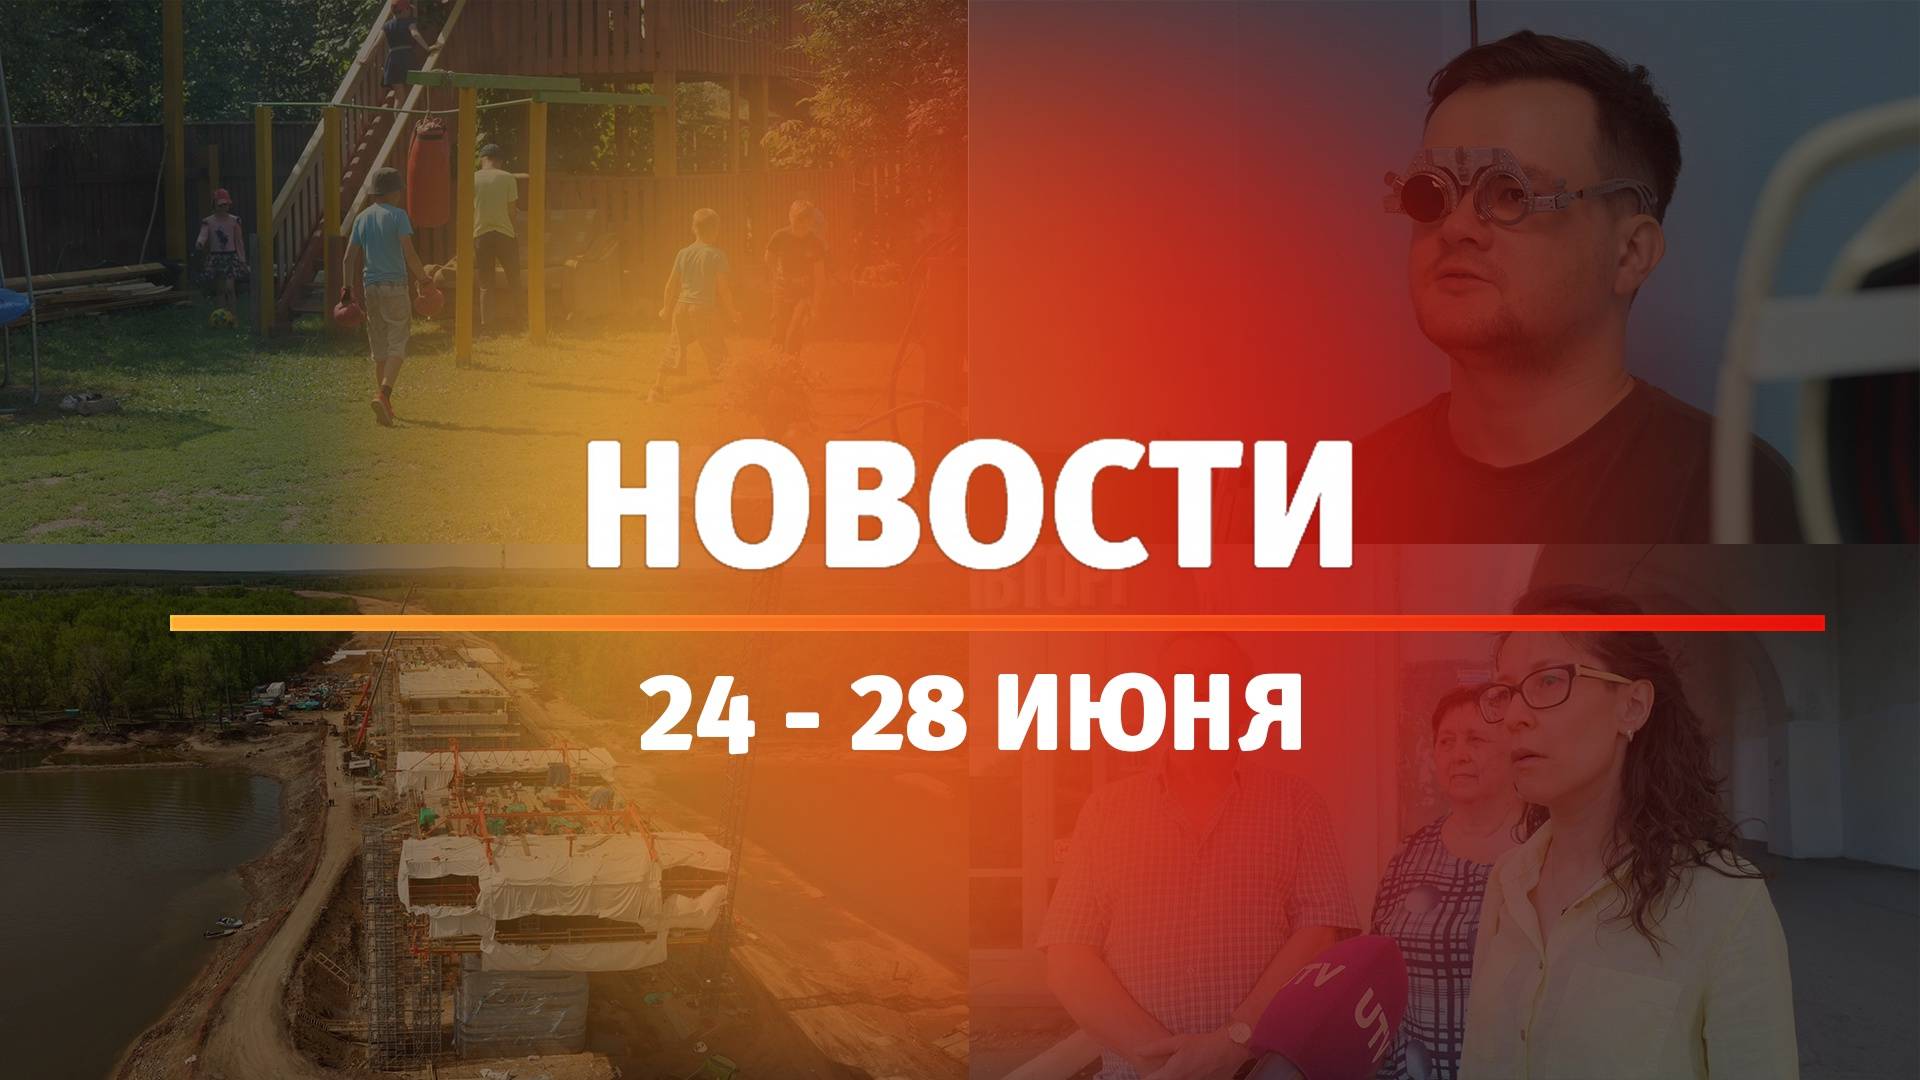 Итоги Новости Уфы и Башкирии | Главное за неделю с 24 по 28 июня